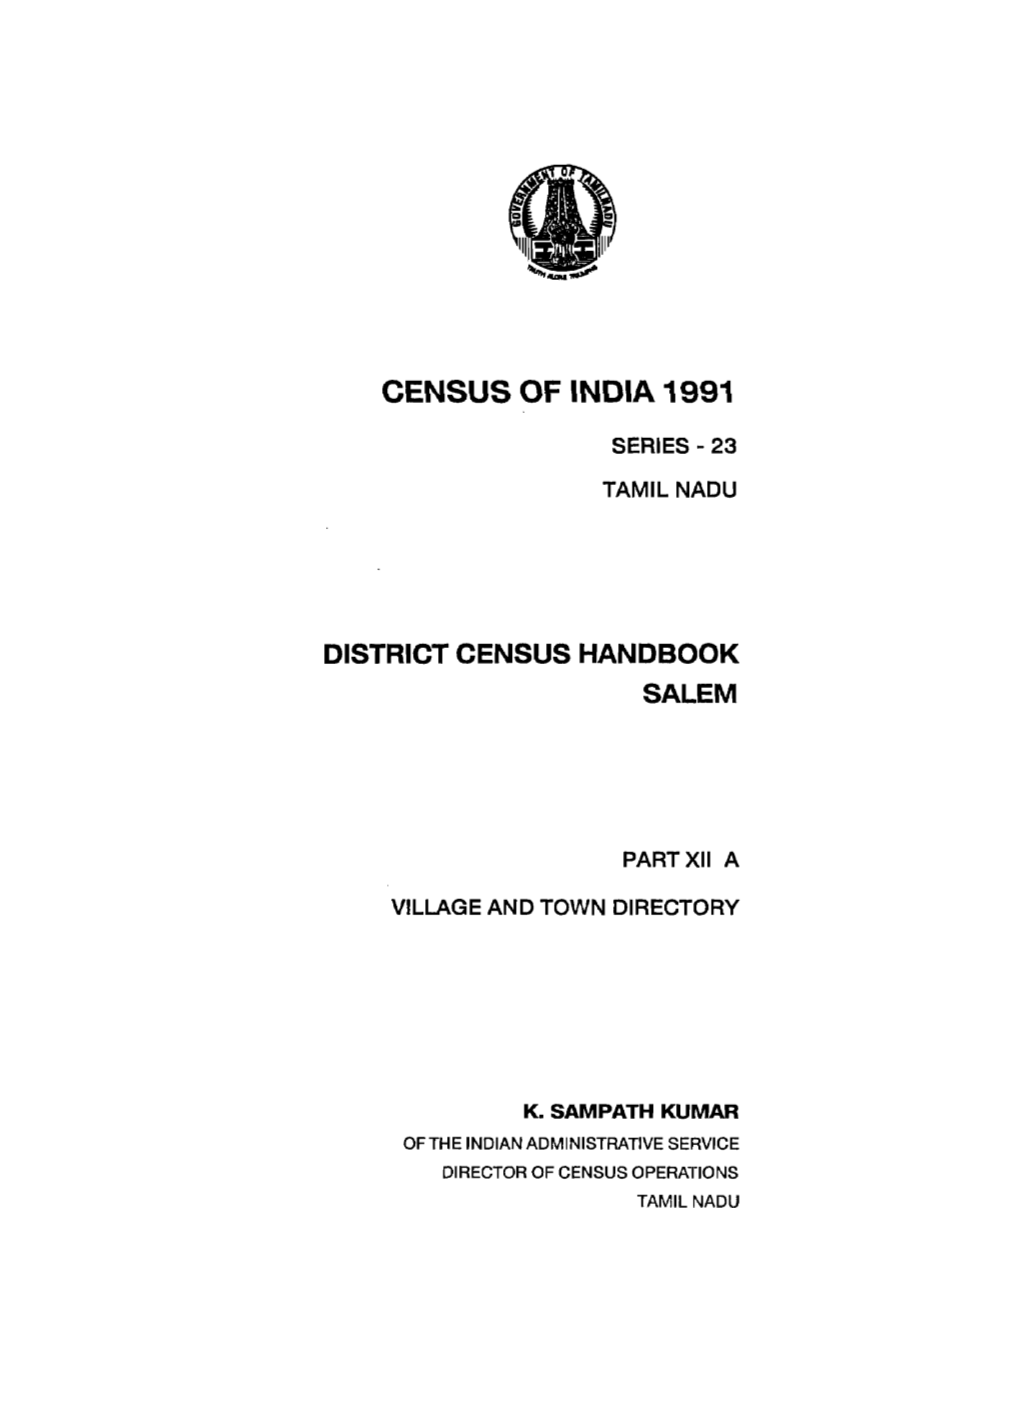 District Census Handbook, Salem, Part XII-A, Series-23